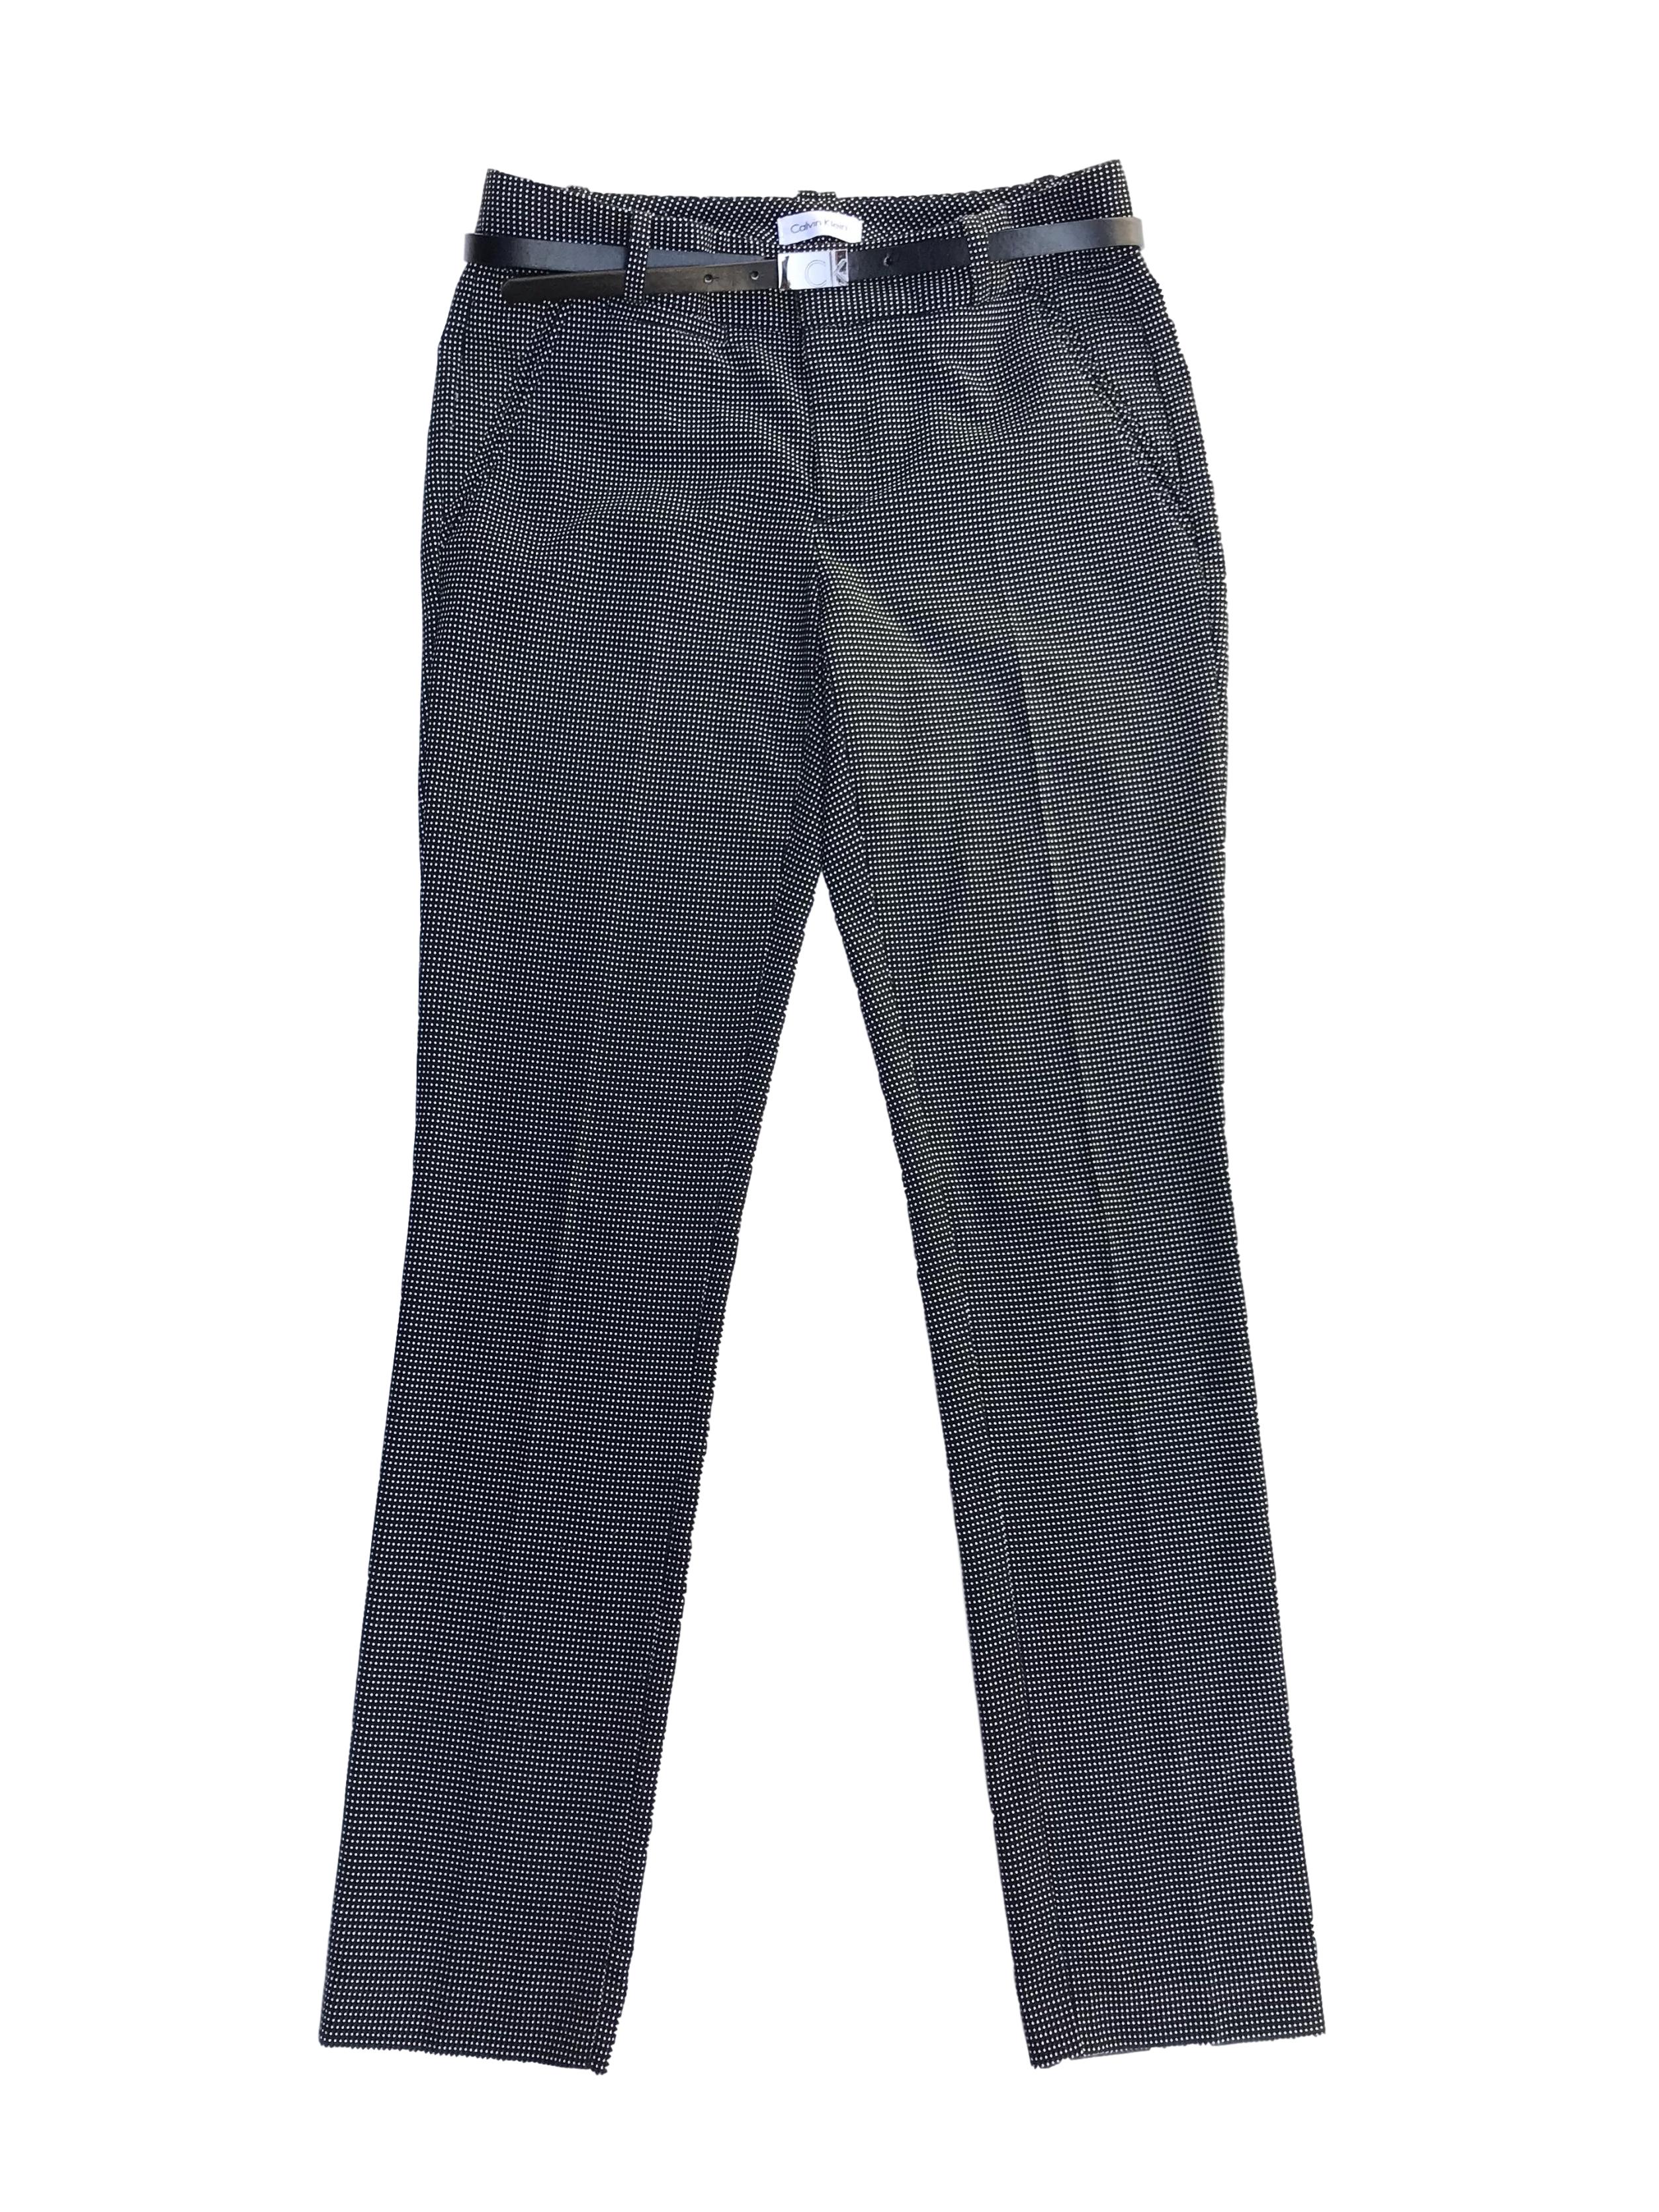 Pantalón Calvin Klein negro con puntos blancos, corte slim, bolsillos laterales. Pretina 78cm. Precio original S/ 280